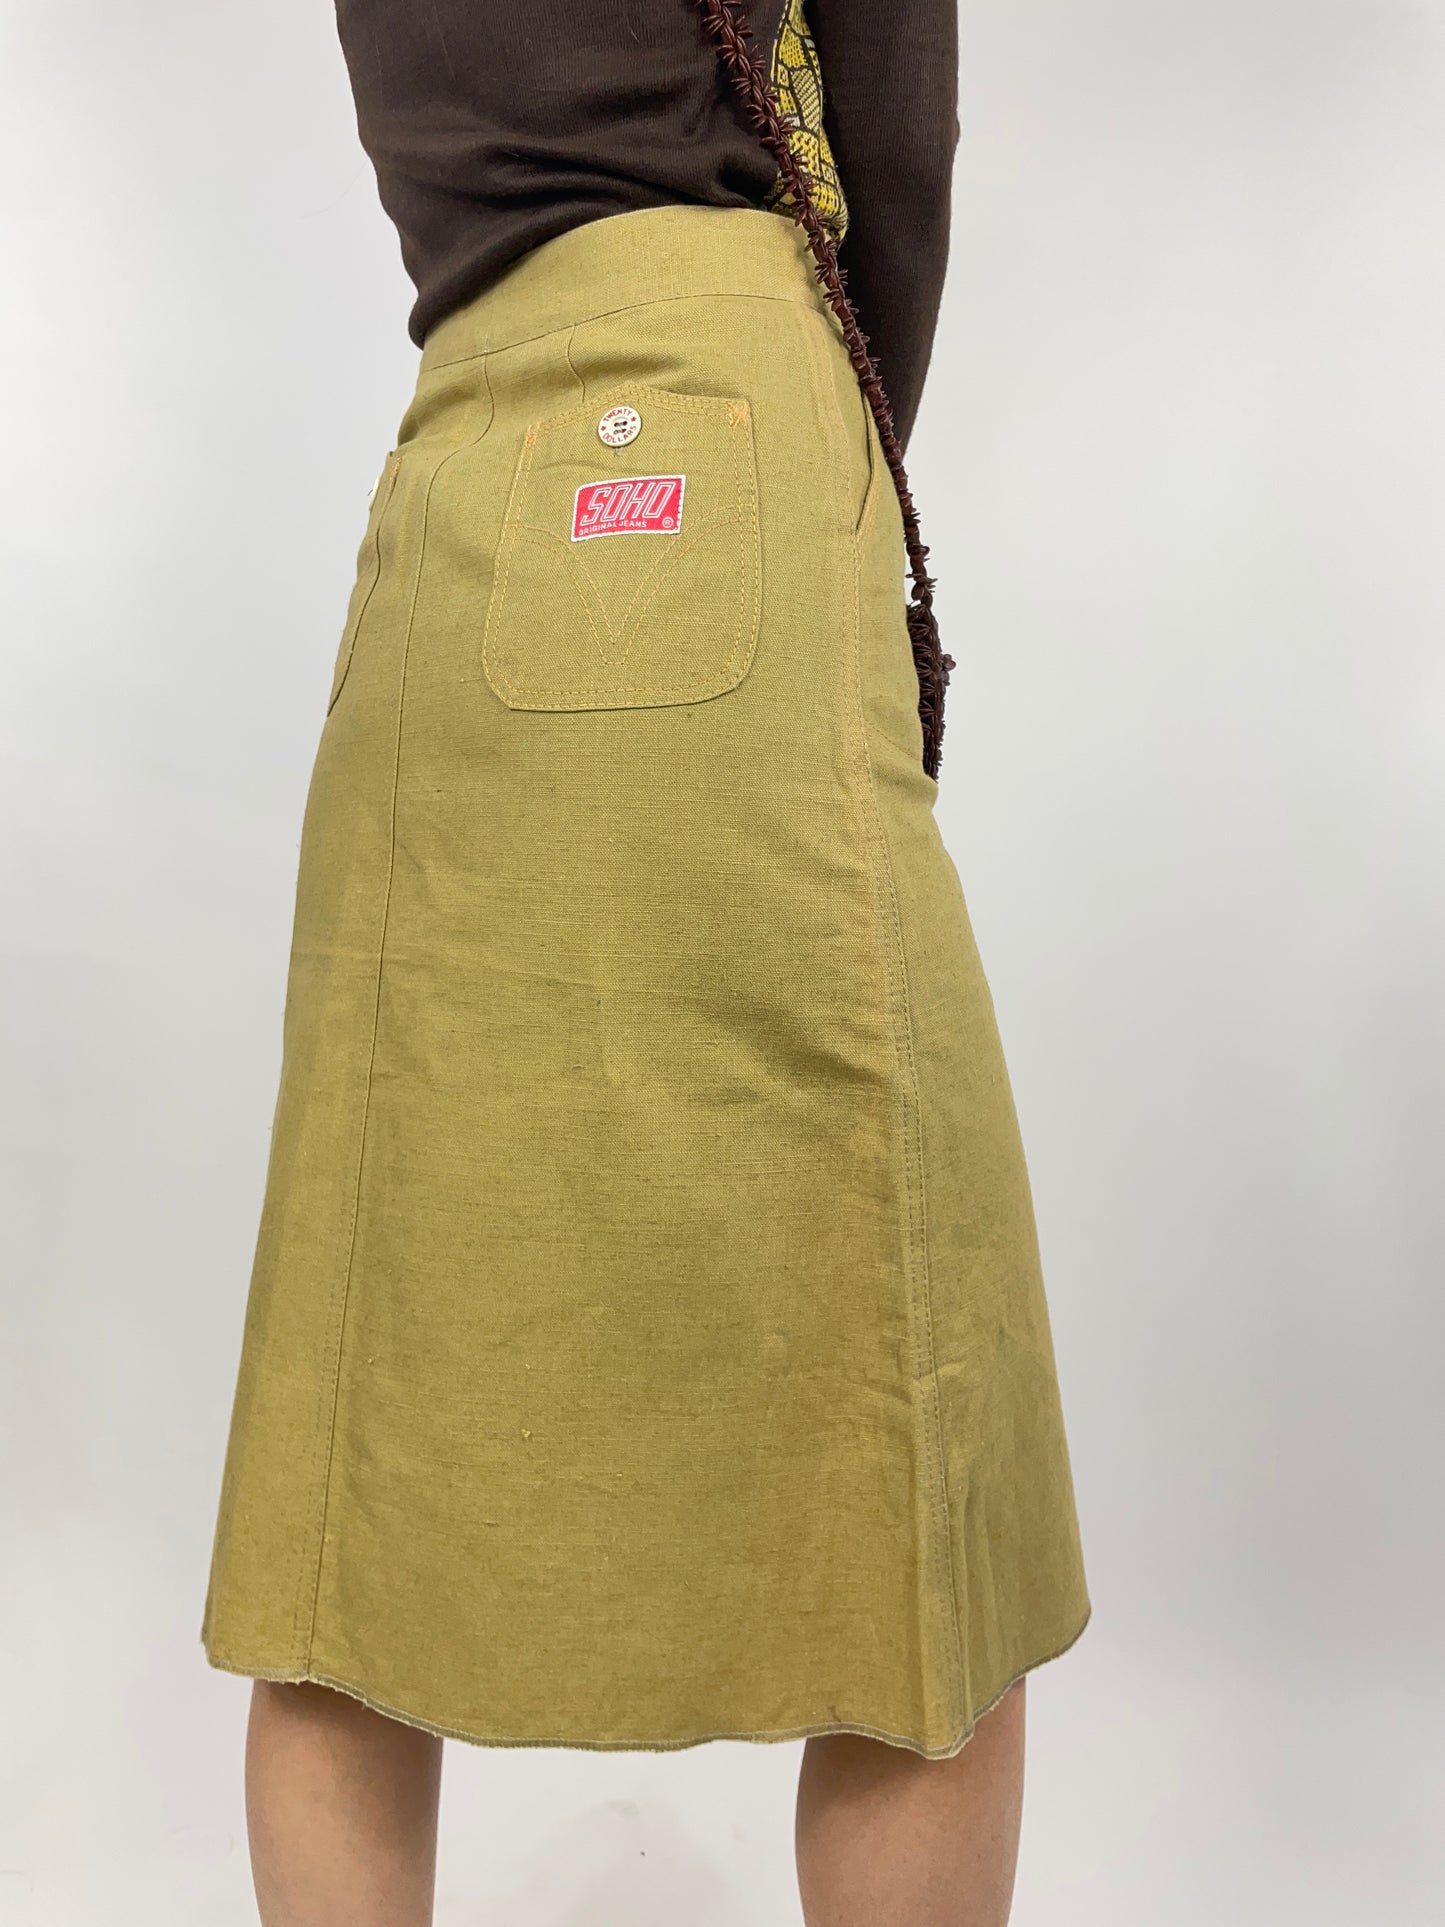 Soho 1970s skirt